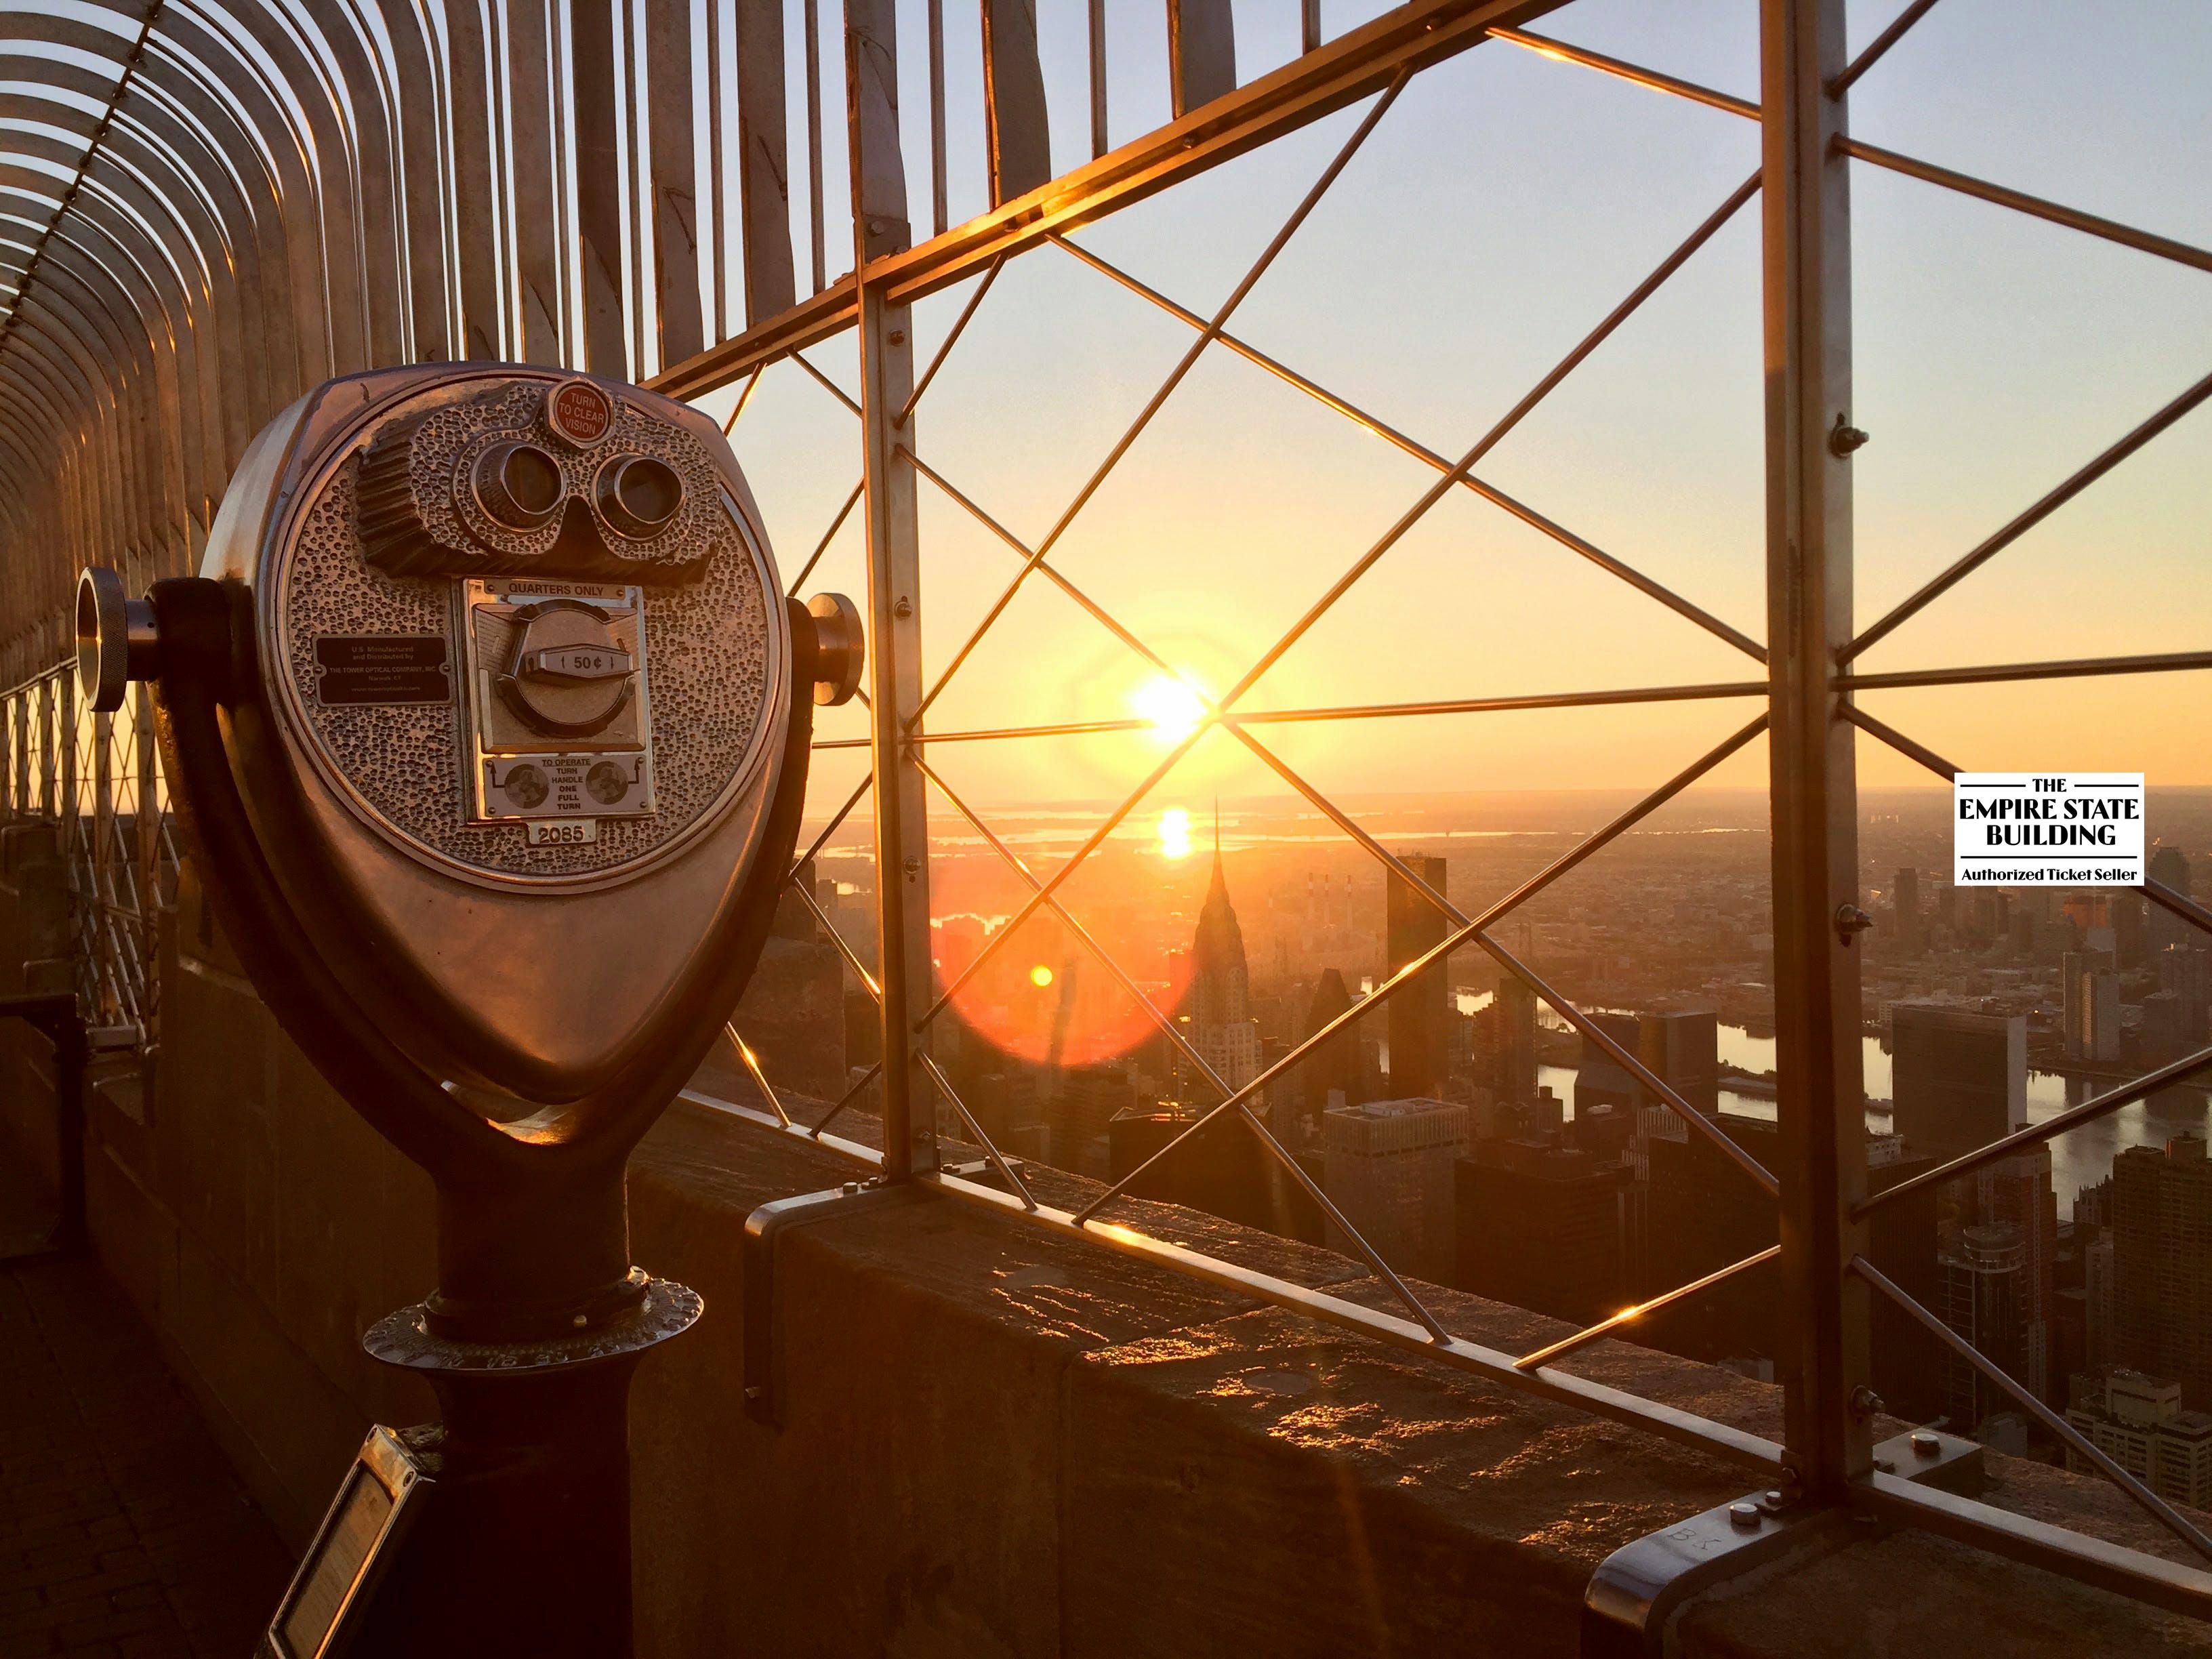 Empire State Building Observatory biljetter till  entré vid soluppgången